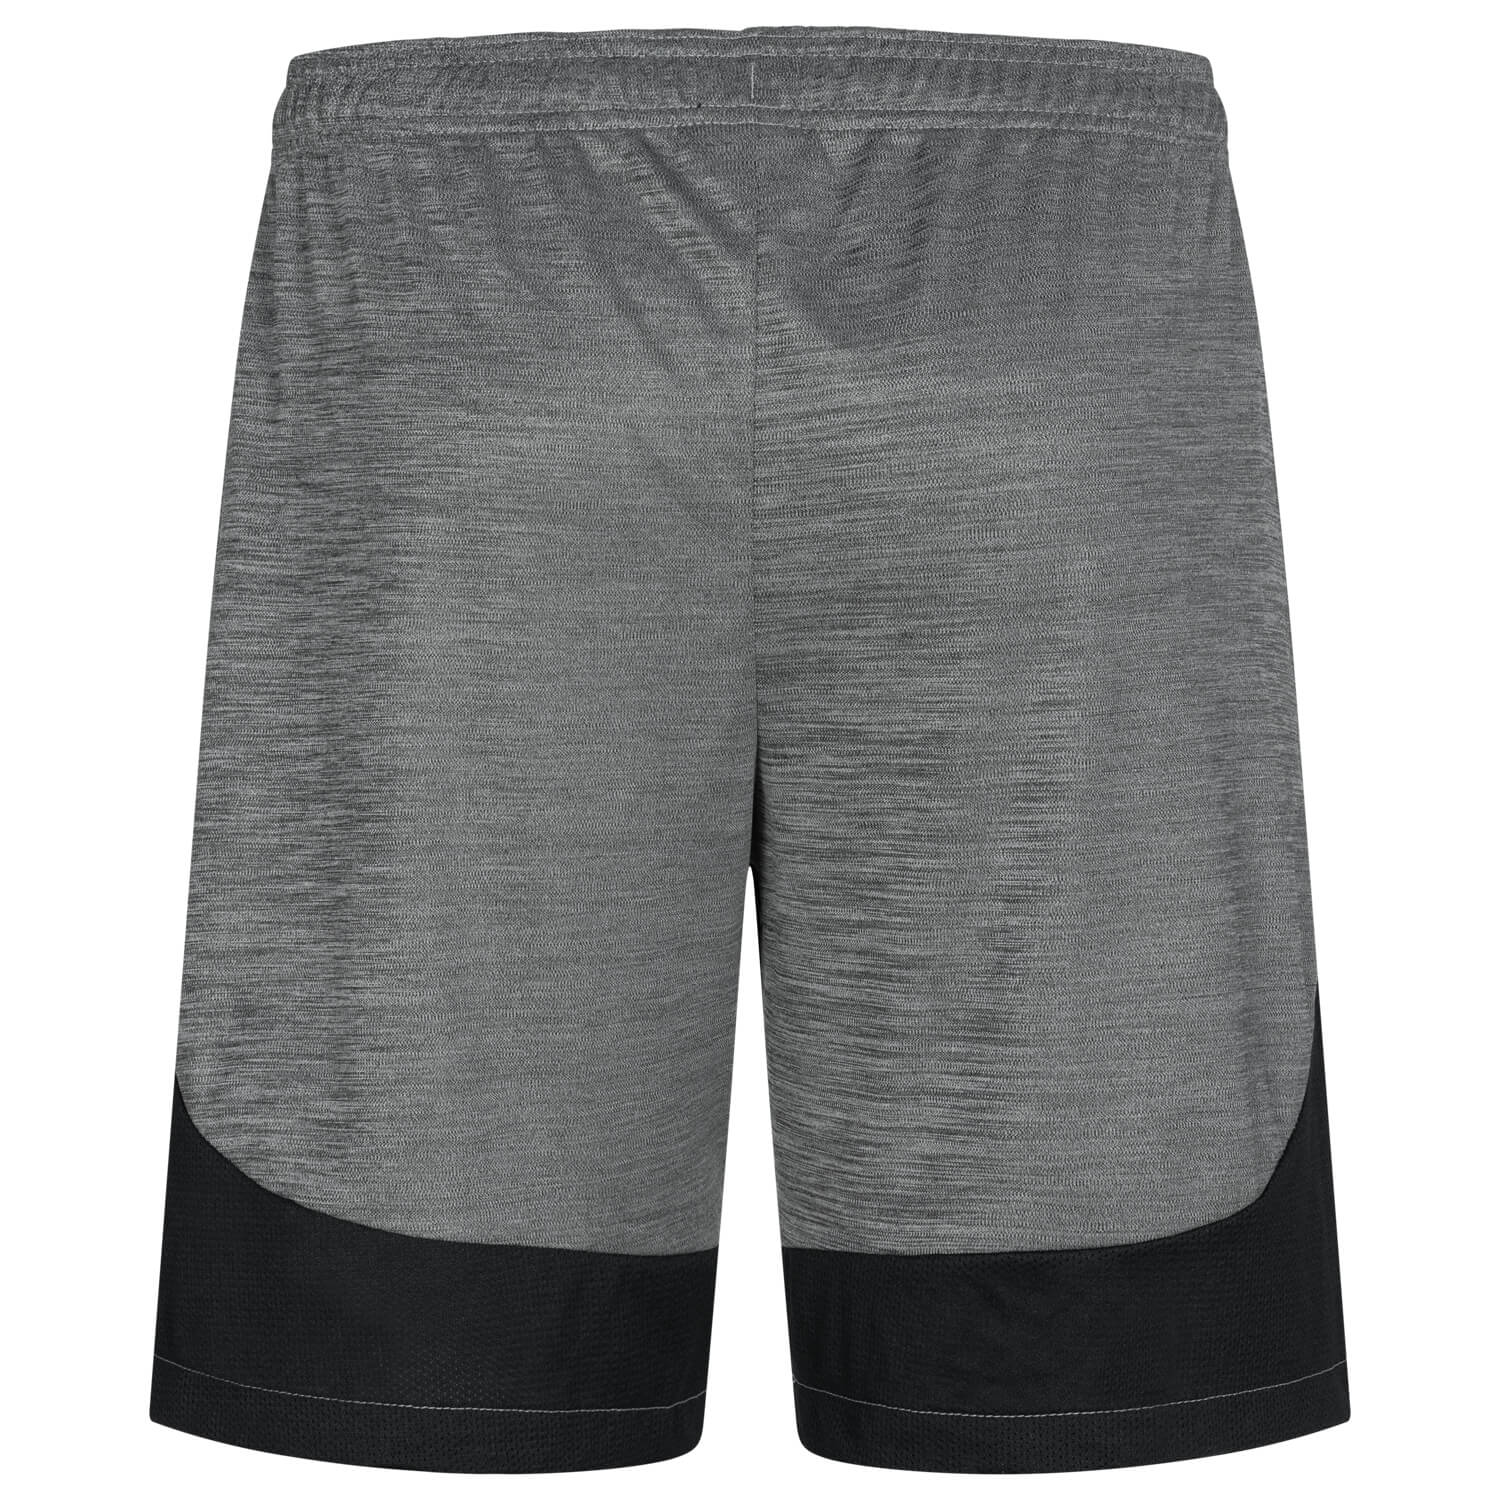 Bild 2: Nike Sport-Shorts Grau